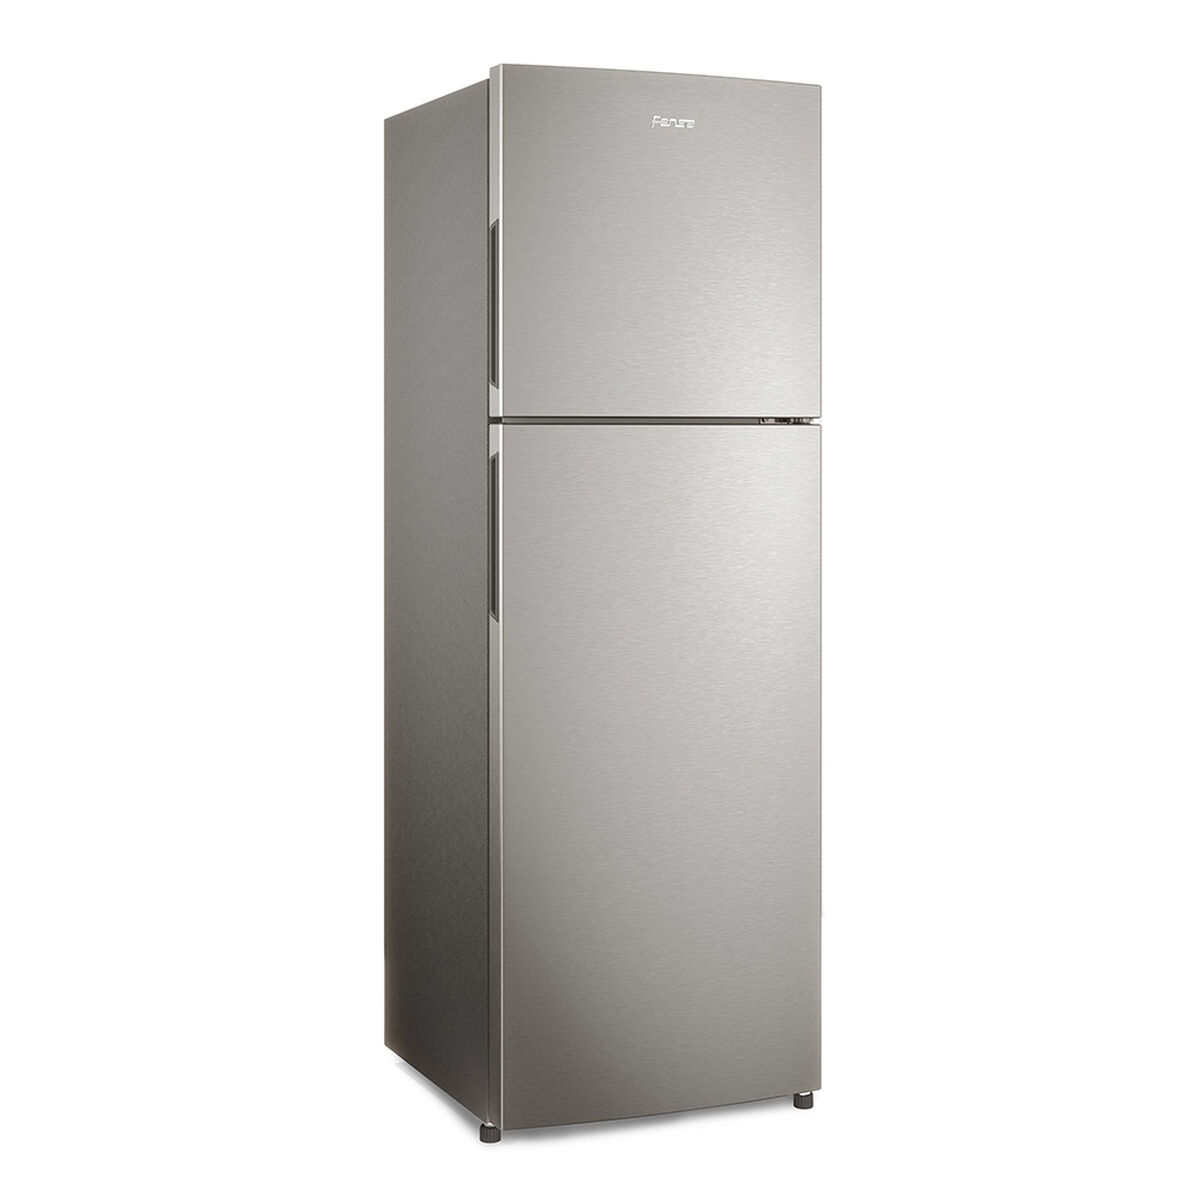 Refrigerador No Frost Fensa IF25 256 lts.